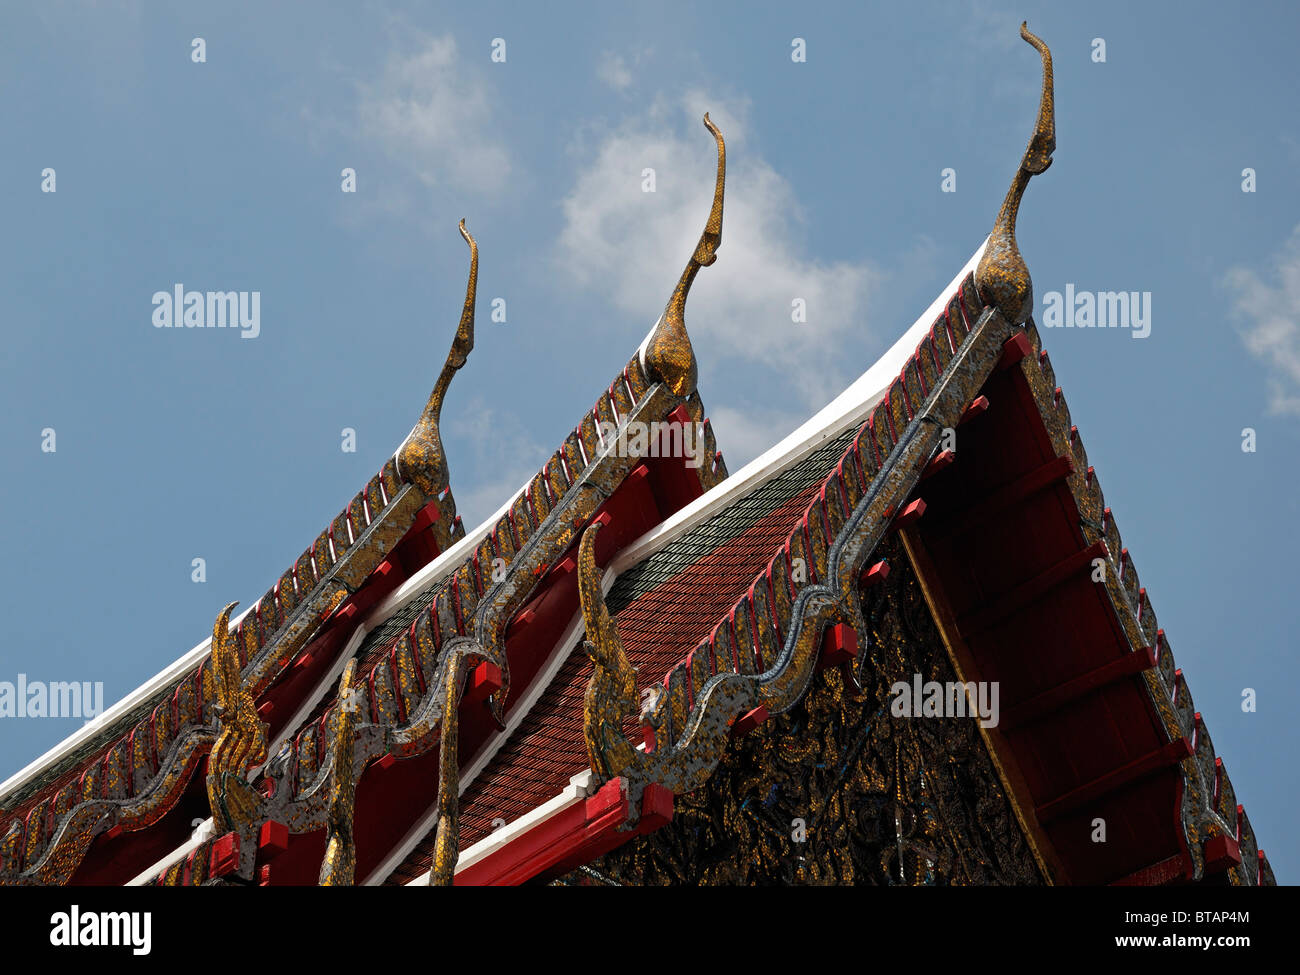 Il Wat Arun tempio dell'alba bangkok thailandia Chofahs bird-come decorazioni sul tetto del tempio Foto Stock